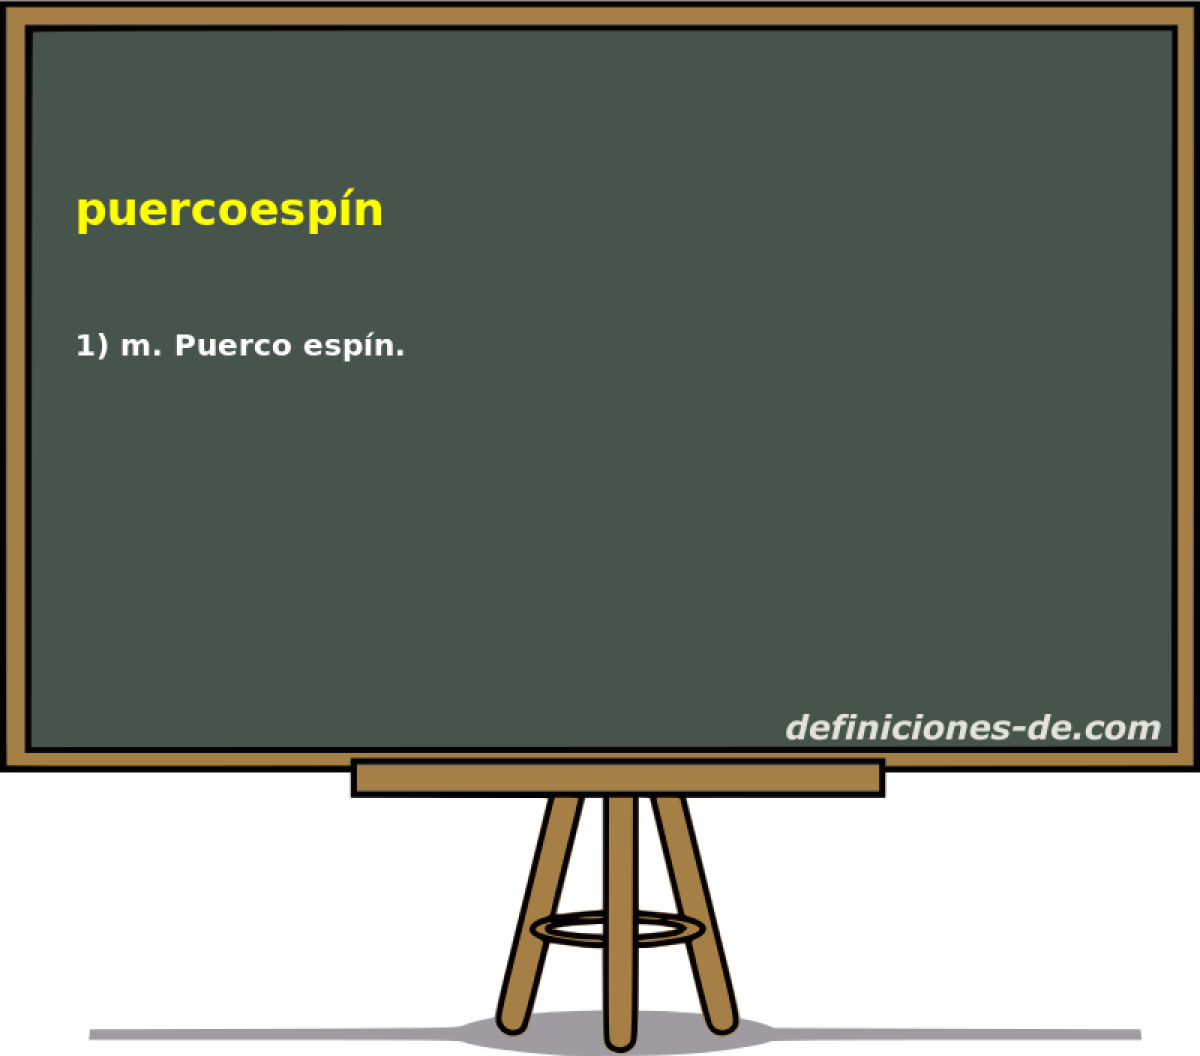 puercoespn 